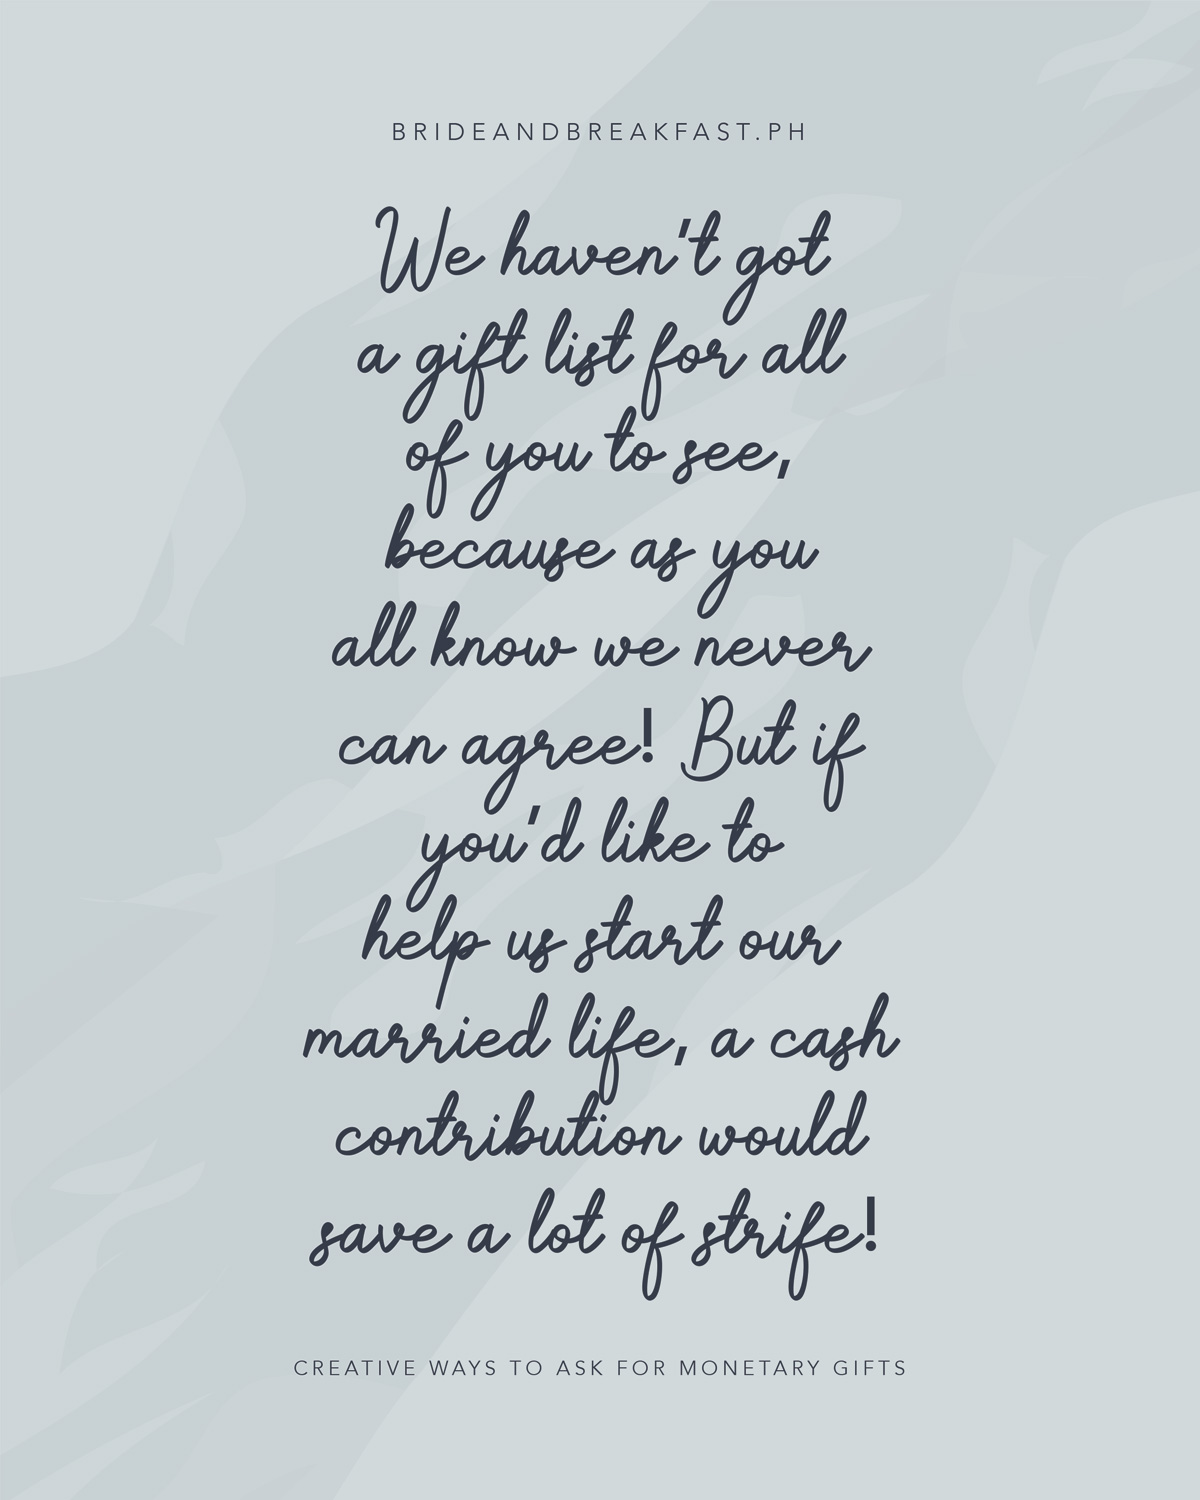 vi har ikke en gaveliste, som i alle kan se, for som i alle ved, kan vi aldrig blive enige! Men hvis du gerne vil hjælpe os med at starte vores ægteskab, et kontant bidrag ville spare en masse stridigheder!